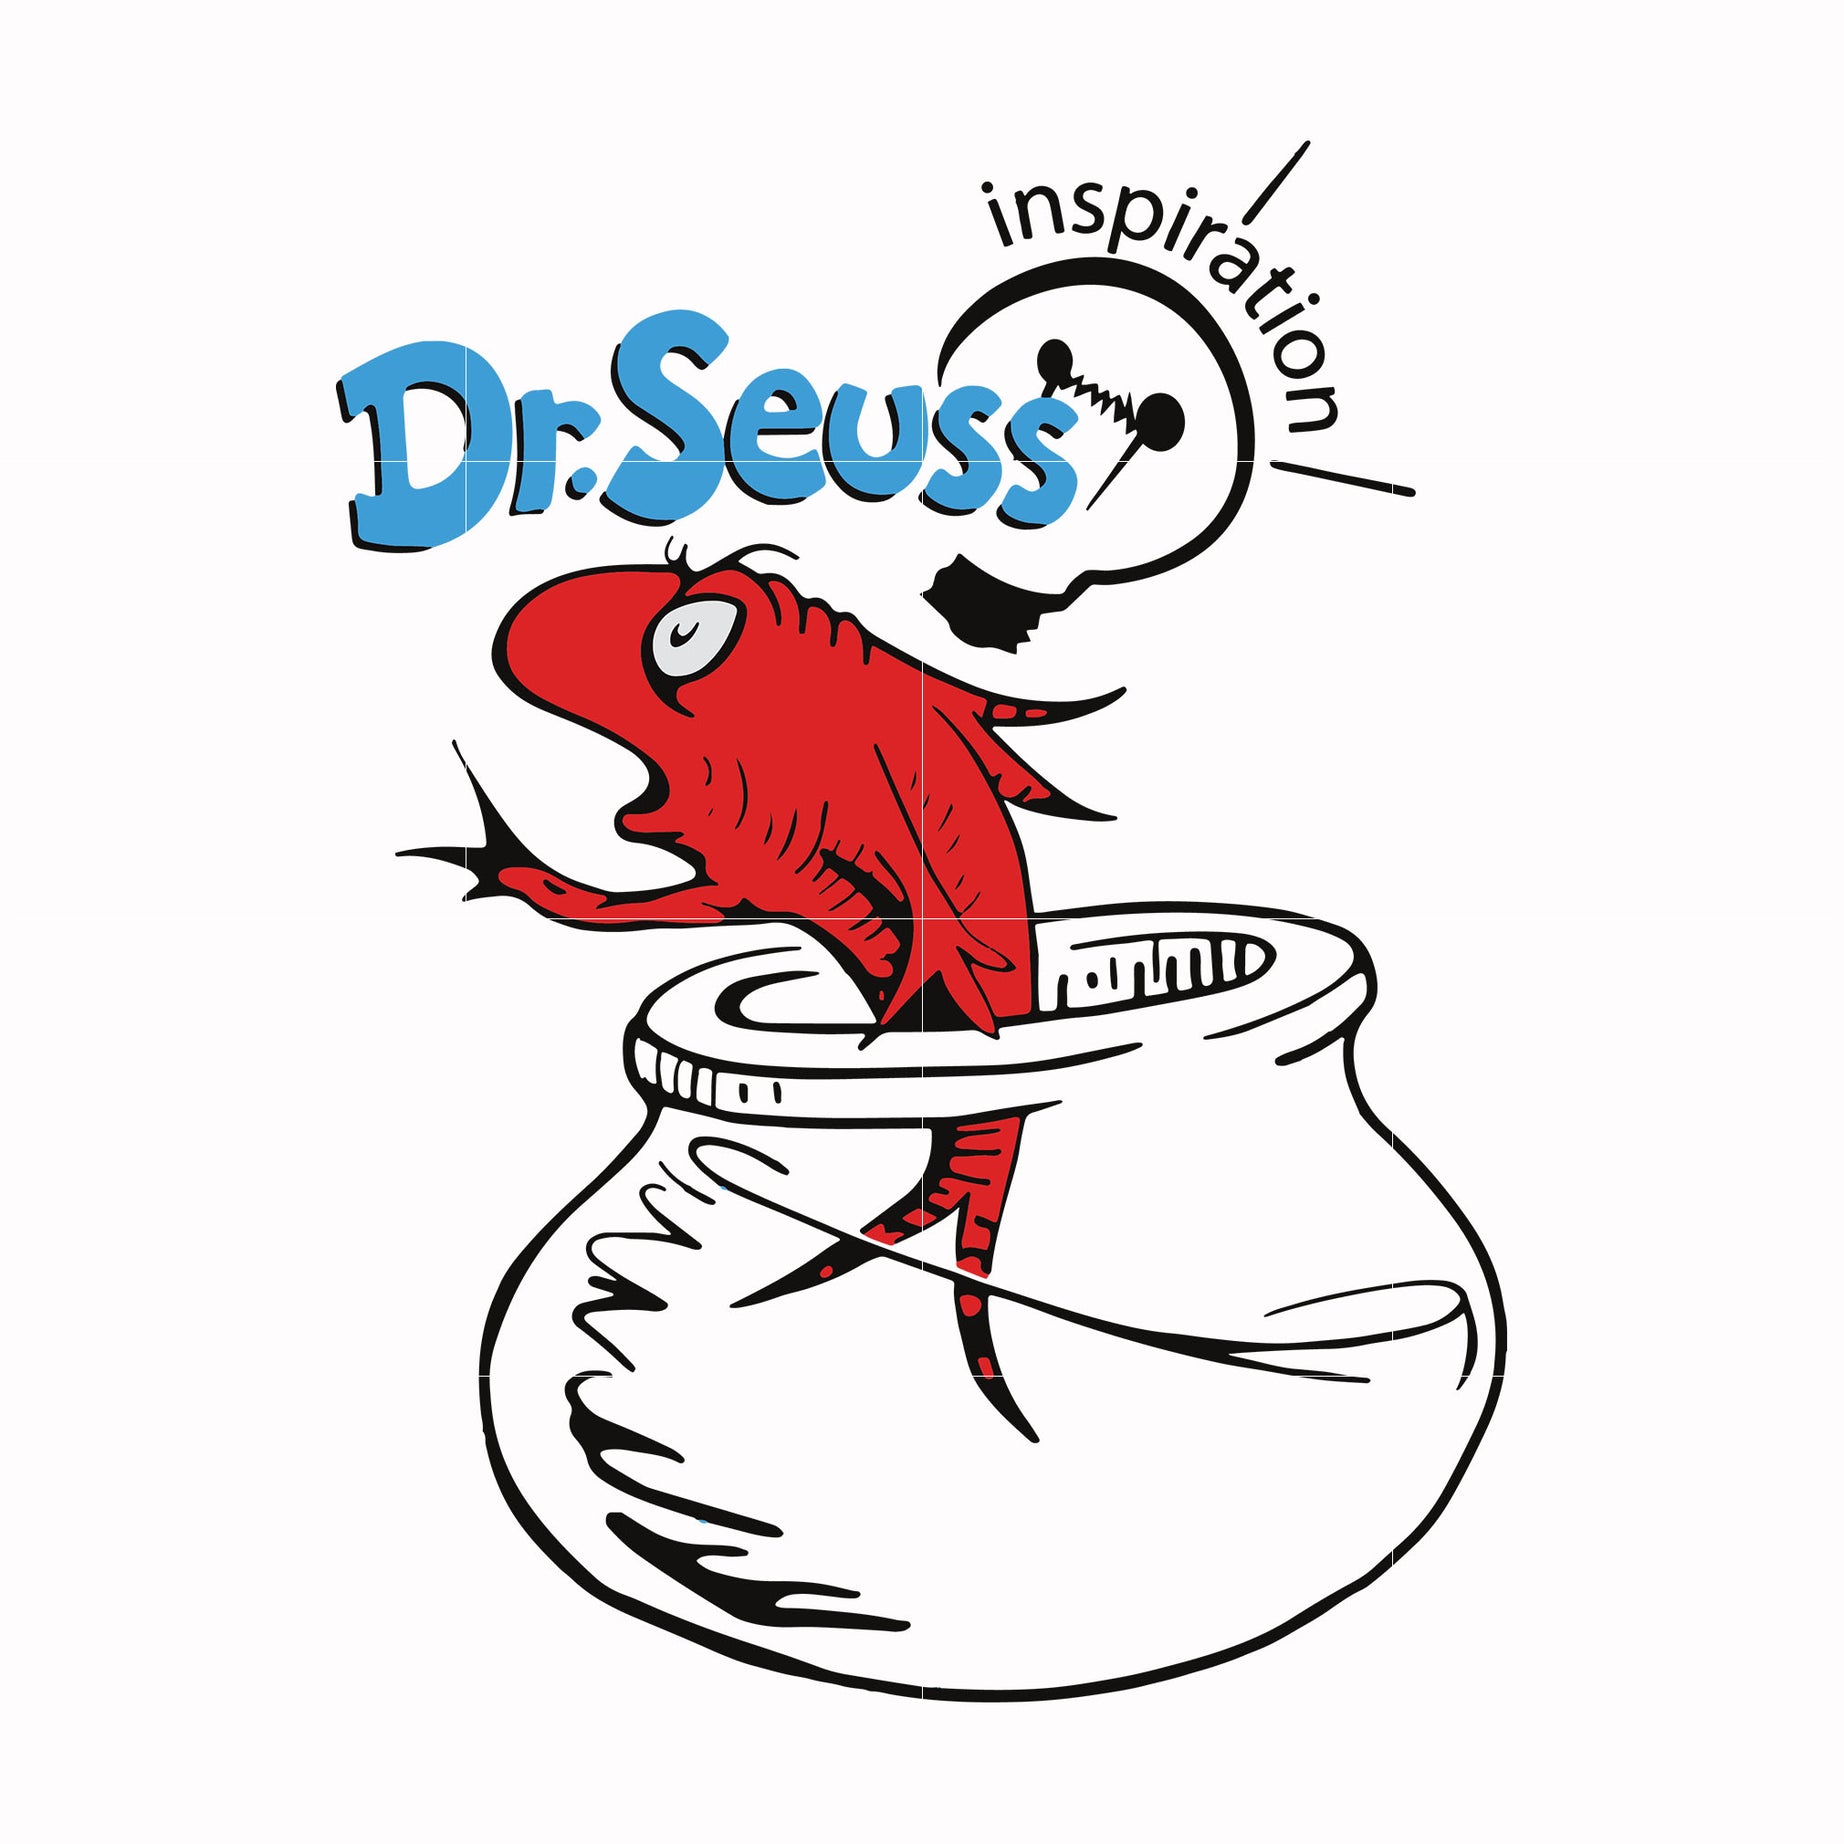 Dr.Seuss Inspiration svg, png, dxf, eps file DR00014